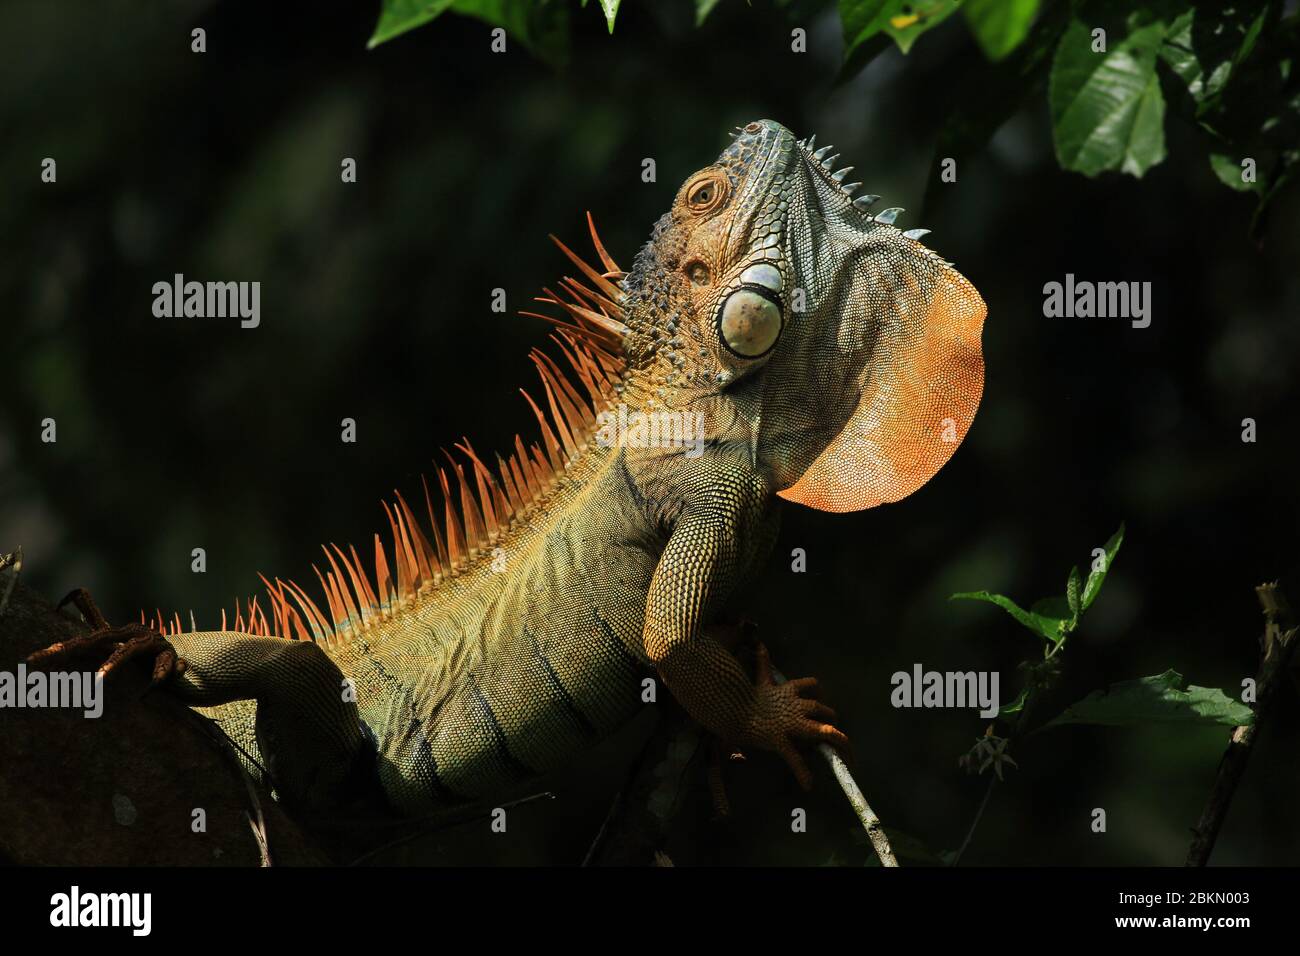 Iguana vert mâle (Iguana iguana) affichant le long de la gorge en affichage territorial. Forêt tropicale, station biologique de la Selva, Sarapiquí, Costa Rica. Banque D'Images